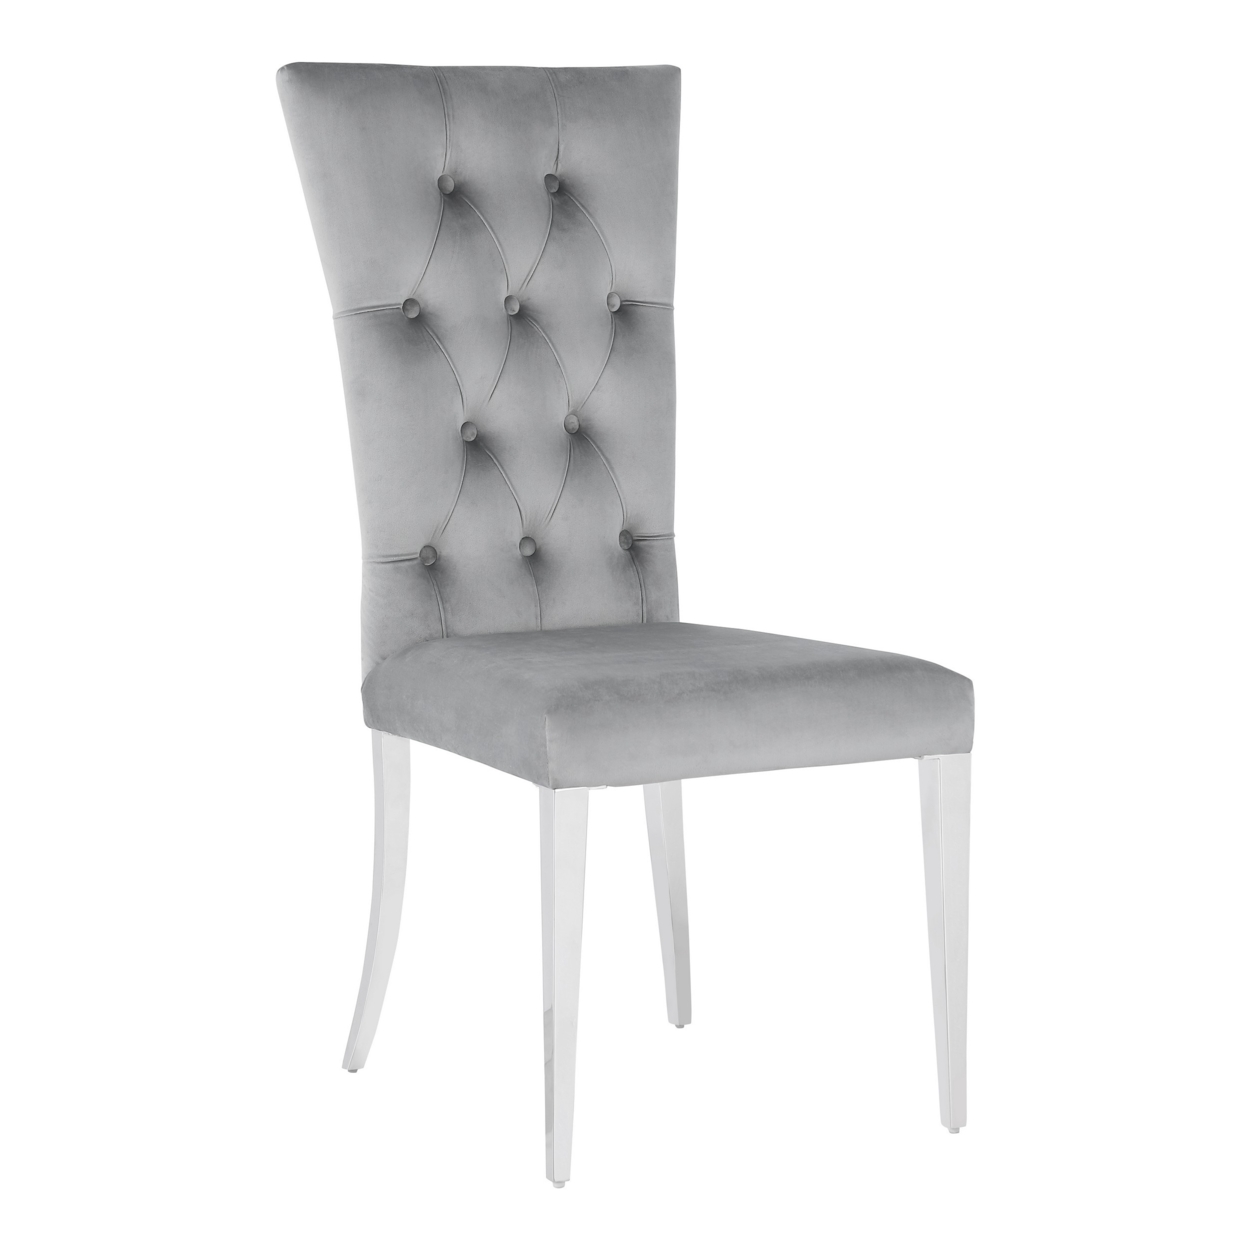 Kery 20 Inch Set Of 2 Side Chairs, Gray Velvet, Tall Flared Tufted Back- Saltoro Sherpi